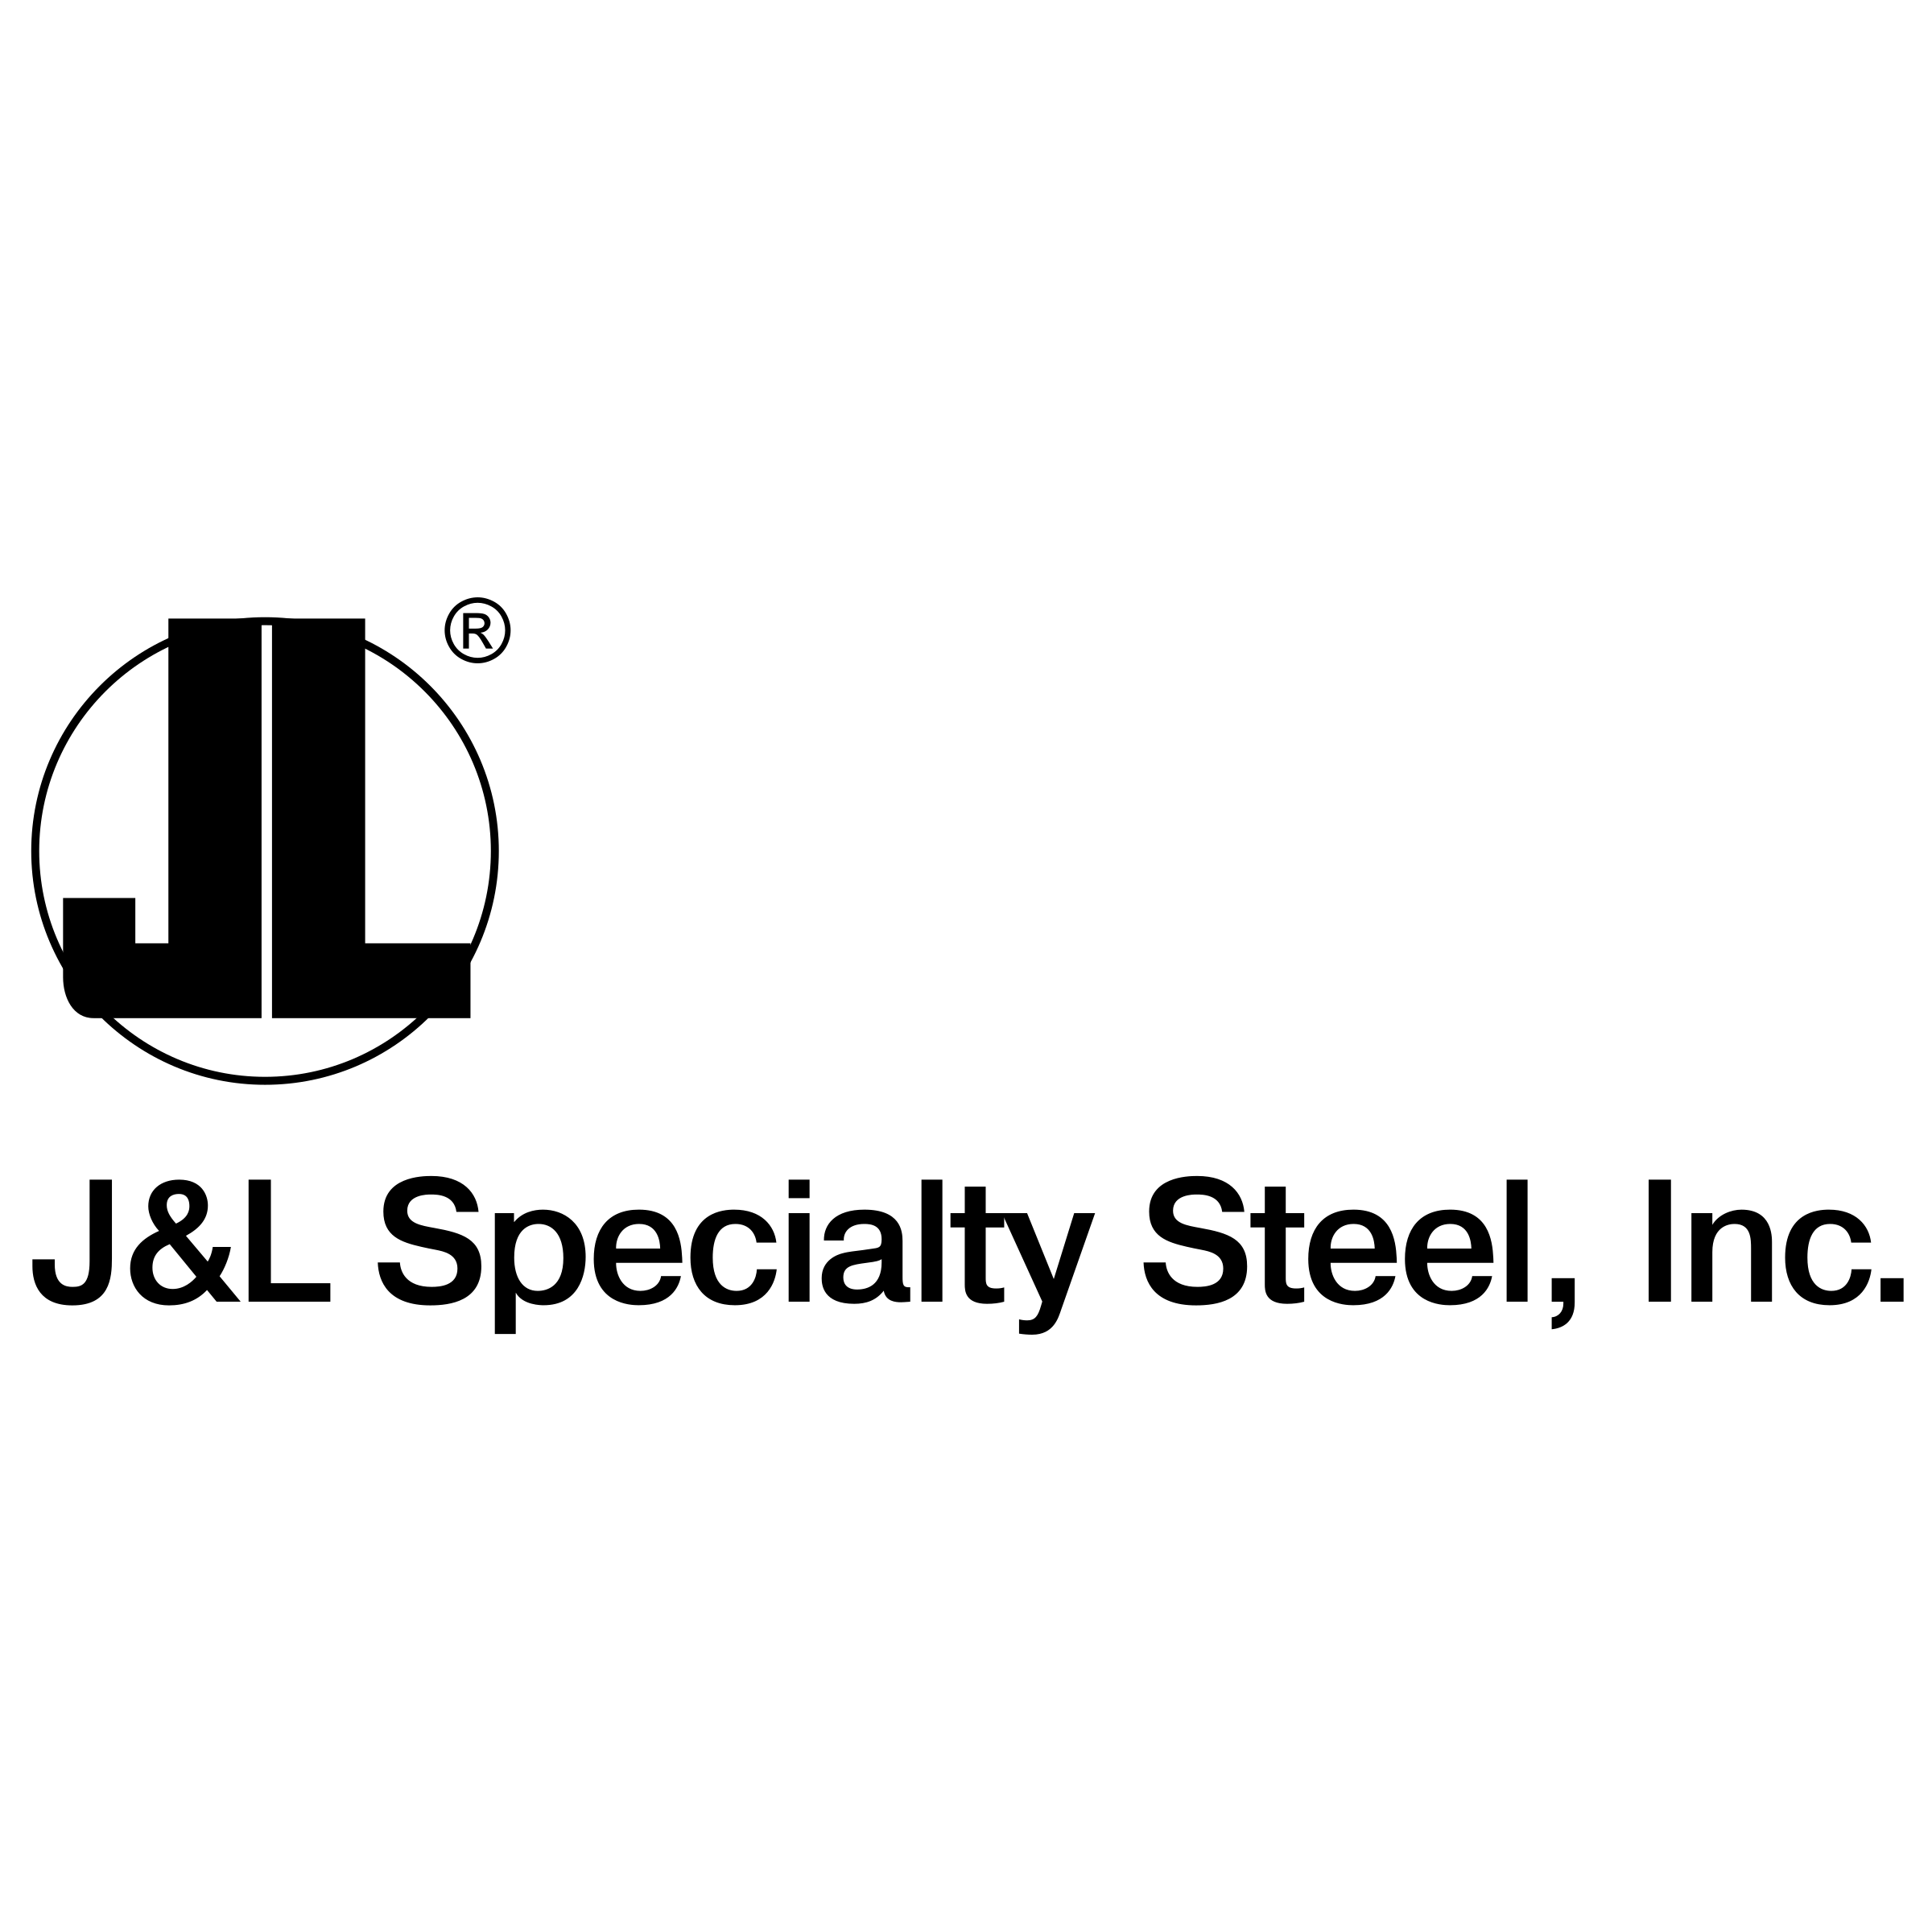 J& L Logo - J&L Specialty Steel Logo PNG Transparent & SVG Vector